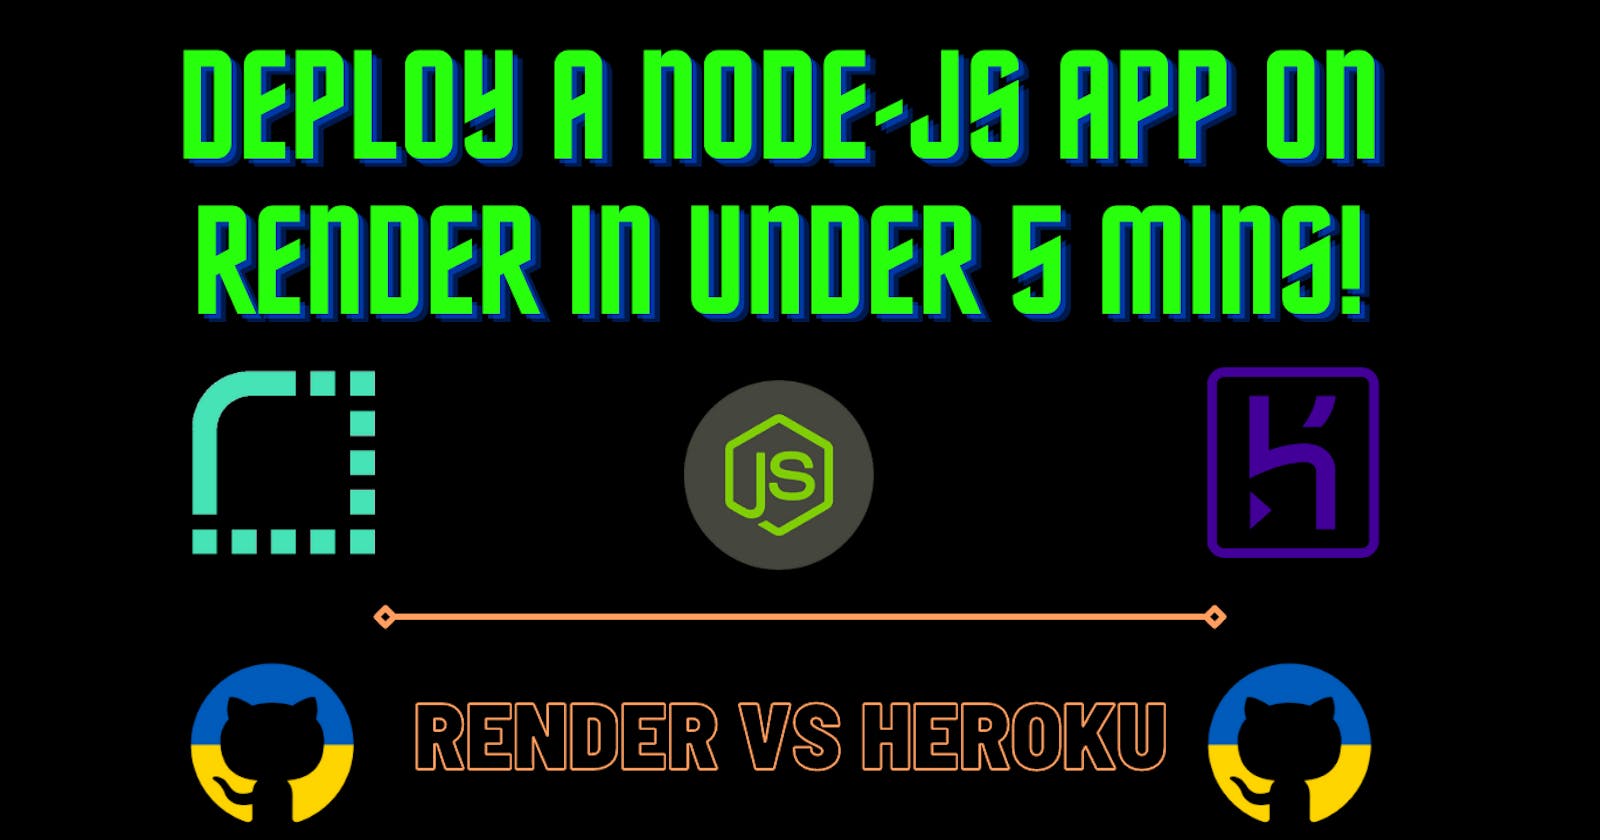 Deploy A Node-JS App On Render In Under 5 Mins!